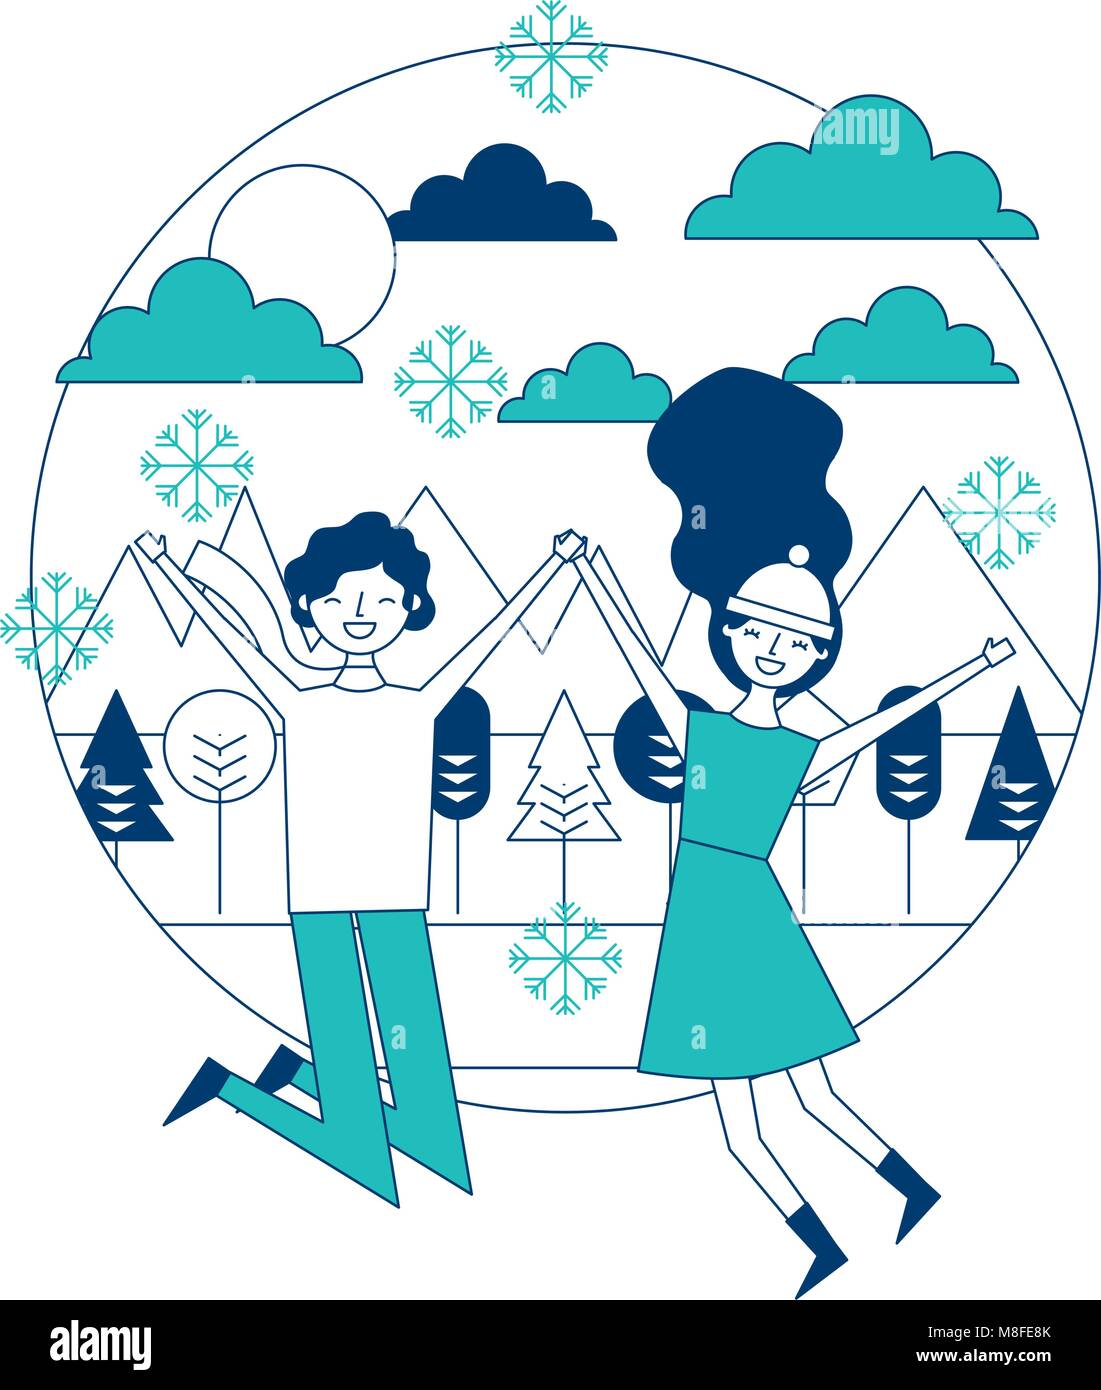 Jeune couple qui saute dans le panorama d'hiver illustration vectorielle de l'image verte et bleue Illustration de Vecteur